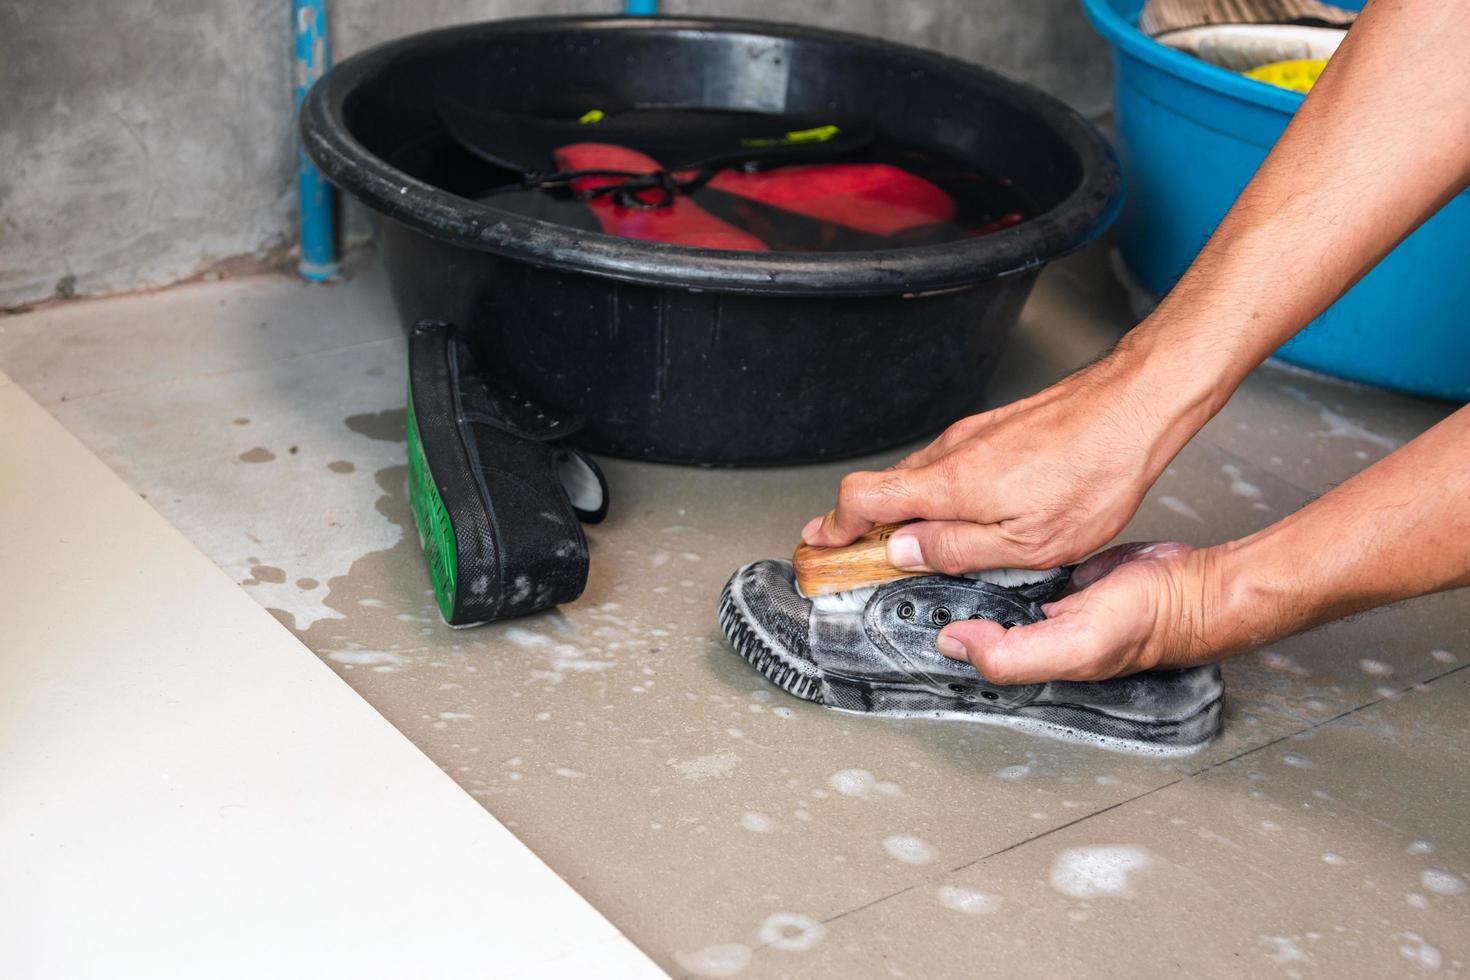 Hände waschen Tennisschuhe neben mit Wasser und Schuhen gefüllten Eimern foto